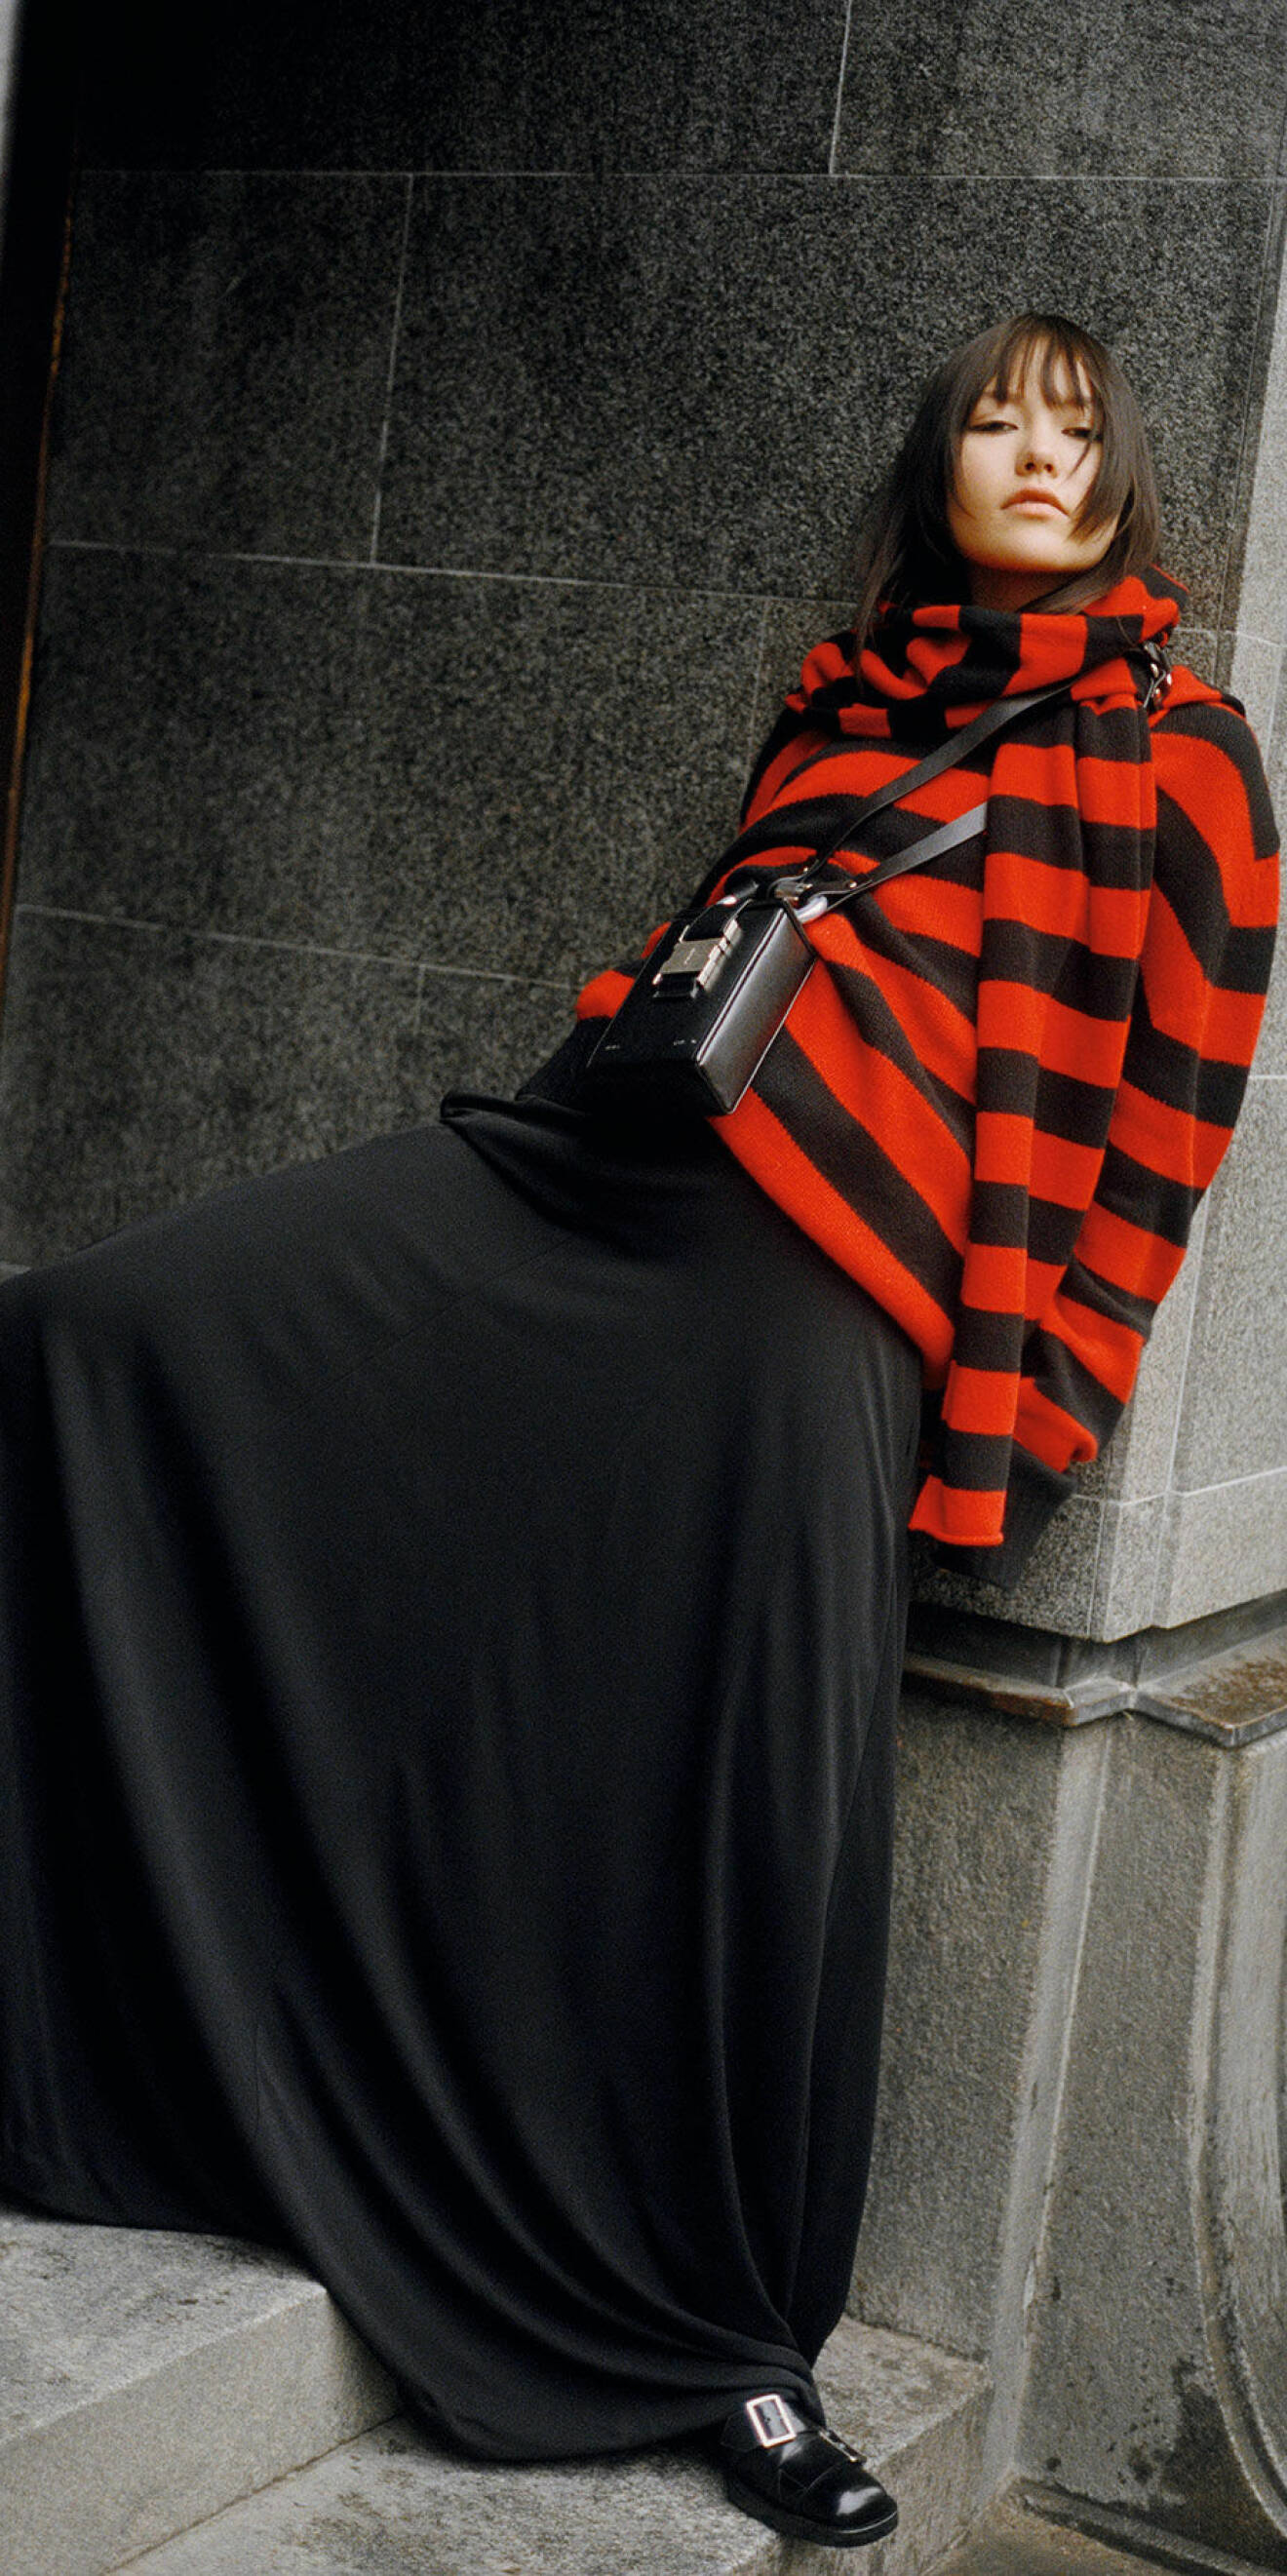 Modellen har på sig en randig tröja i rött och svart tillsammans med en svart långkjol